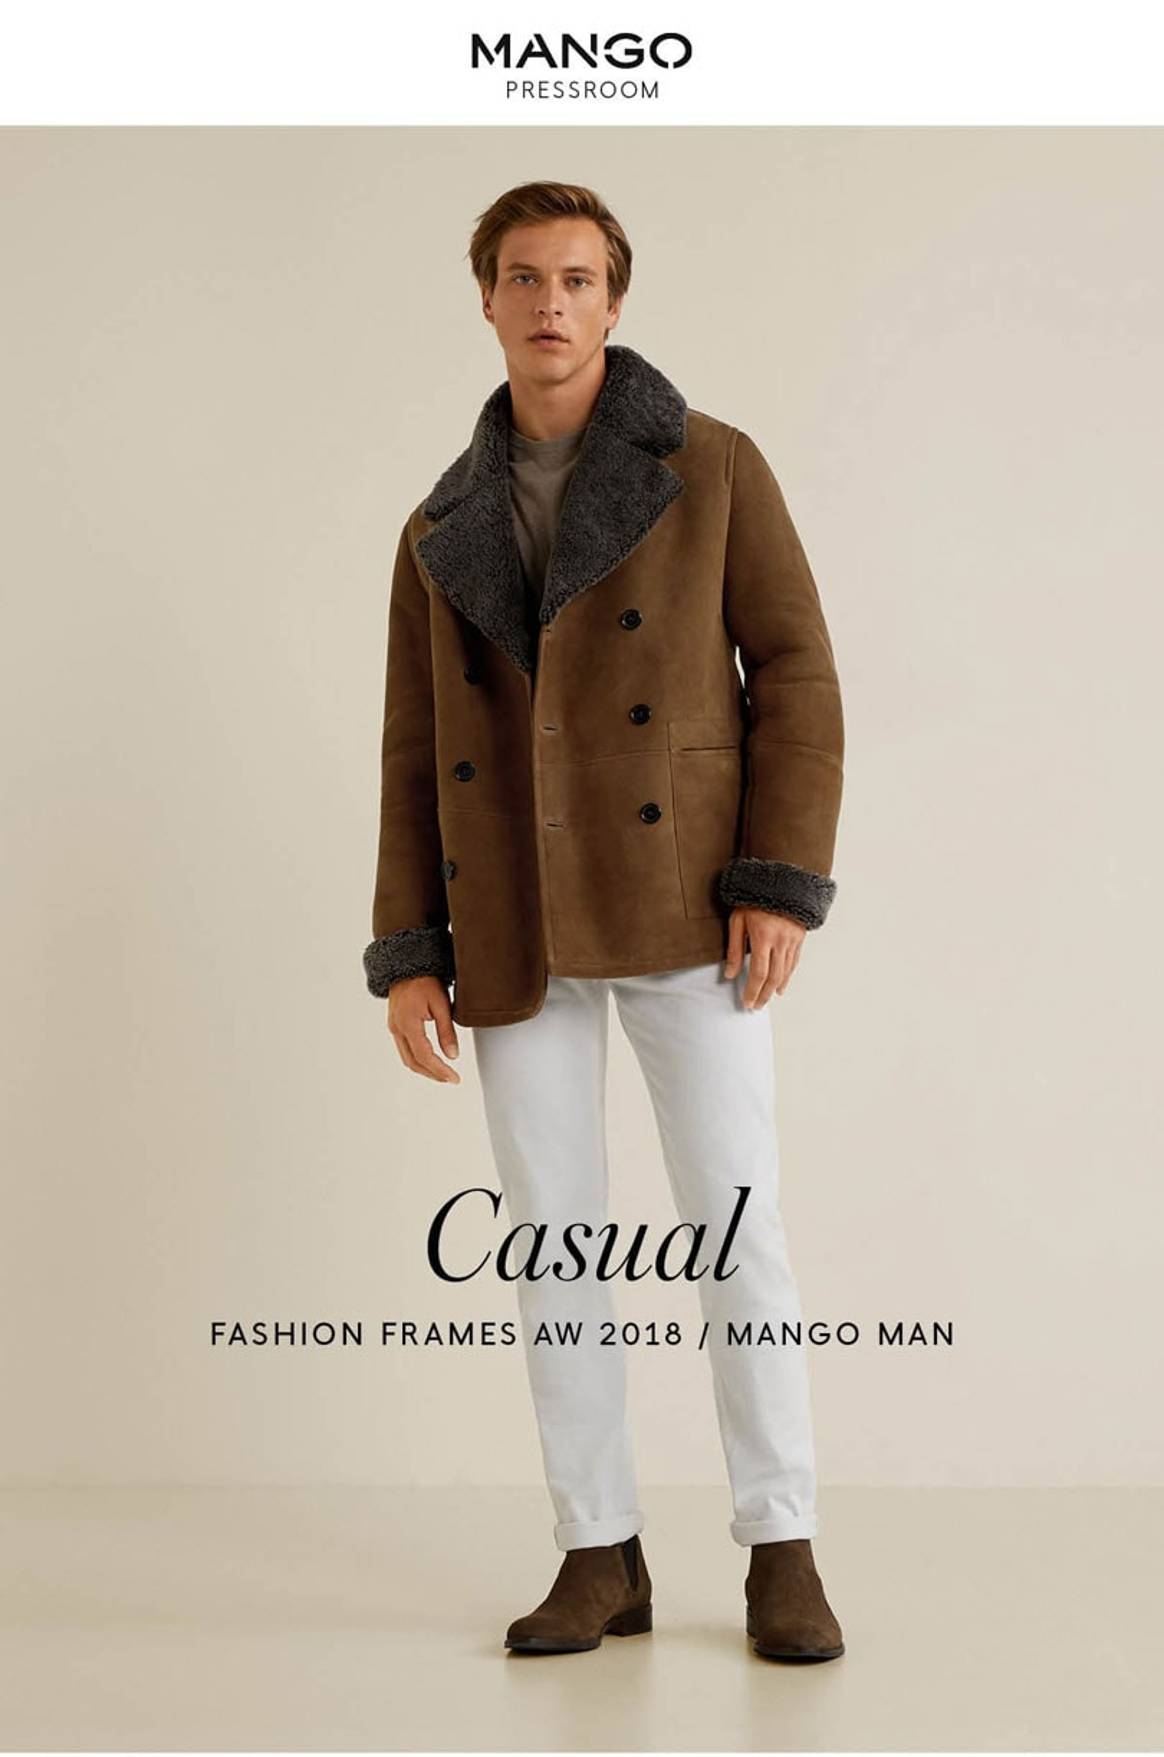 MANGO MAN Fashion Frames 2018 IN